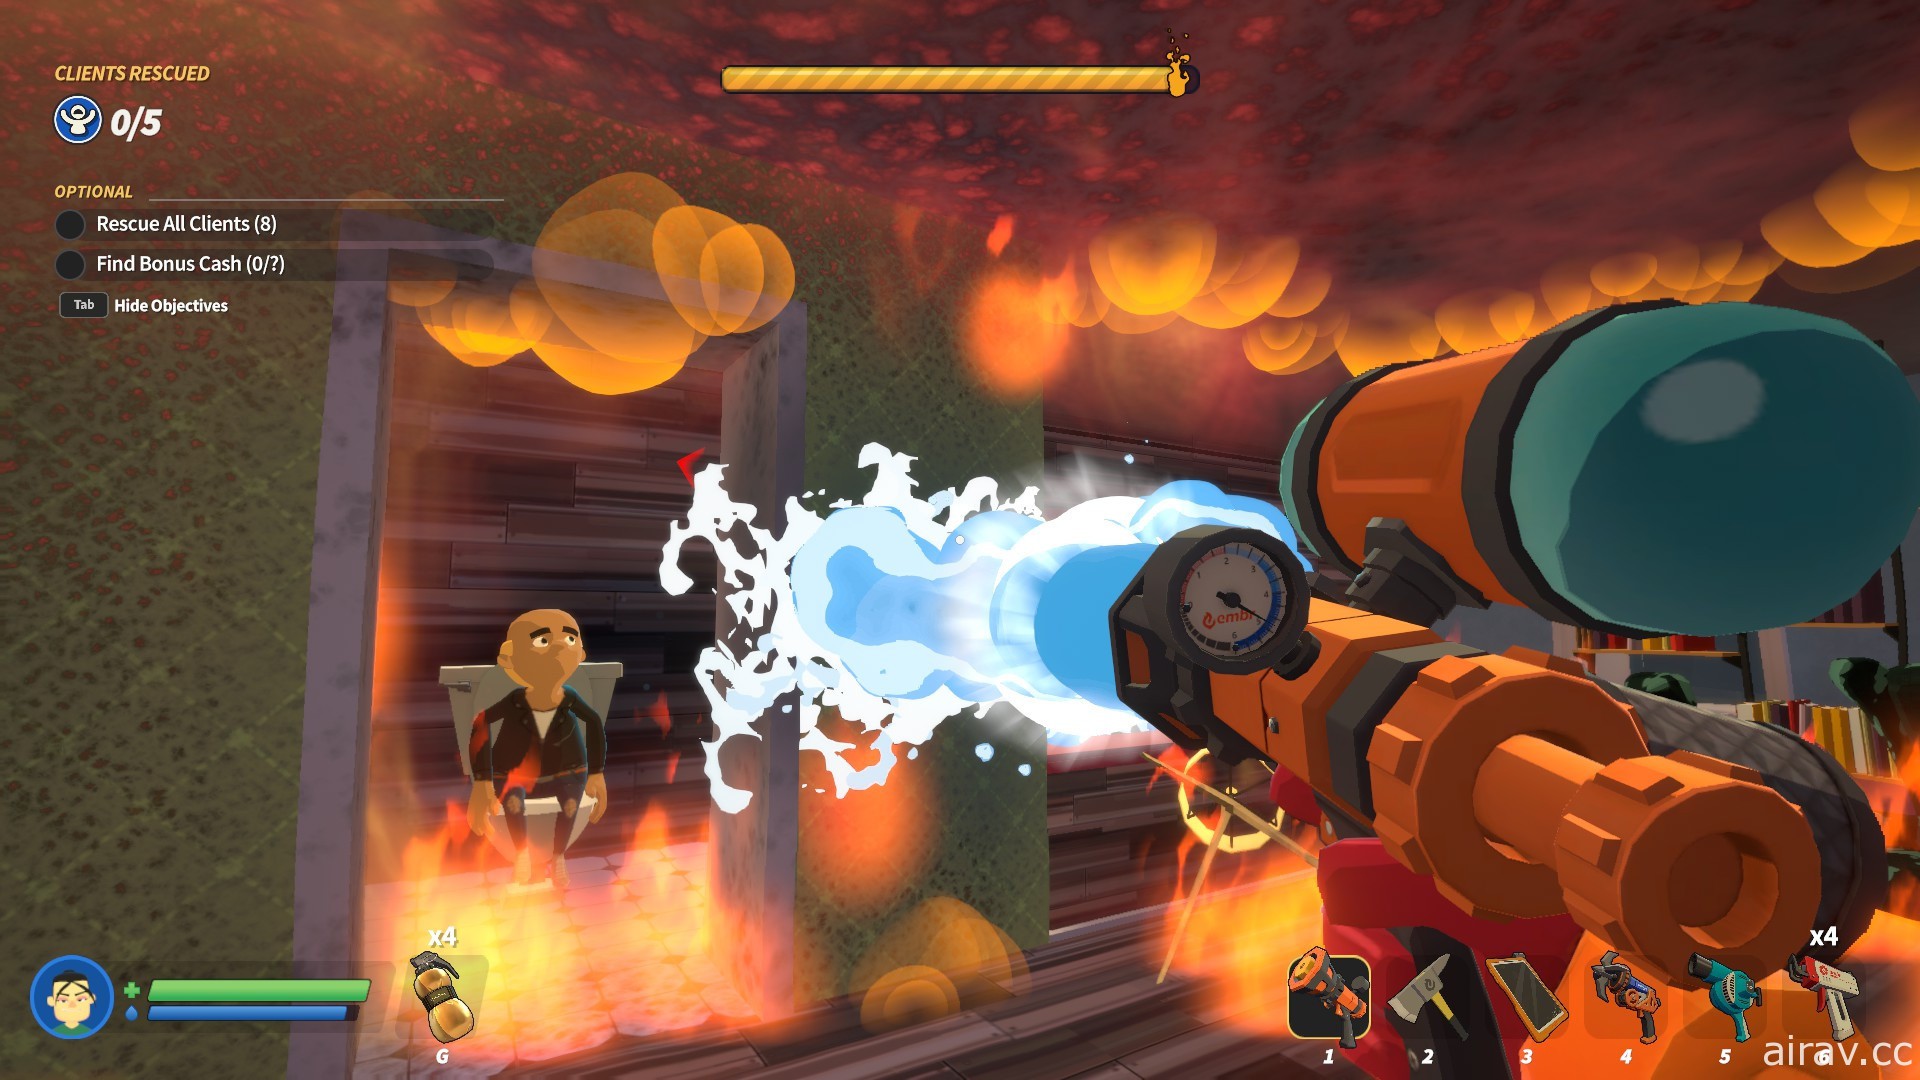 多人合作消防游戏《灭火先锋》PC 版 9 月 23 日脱离抢先体验阶段